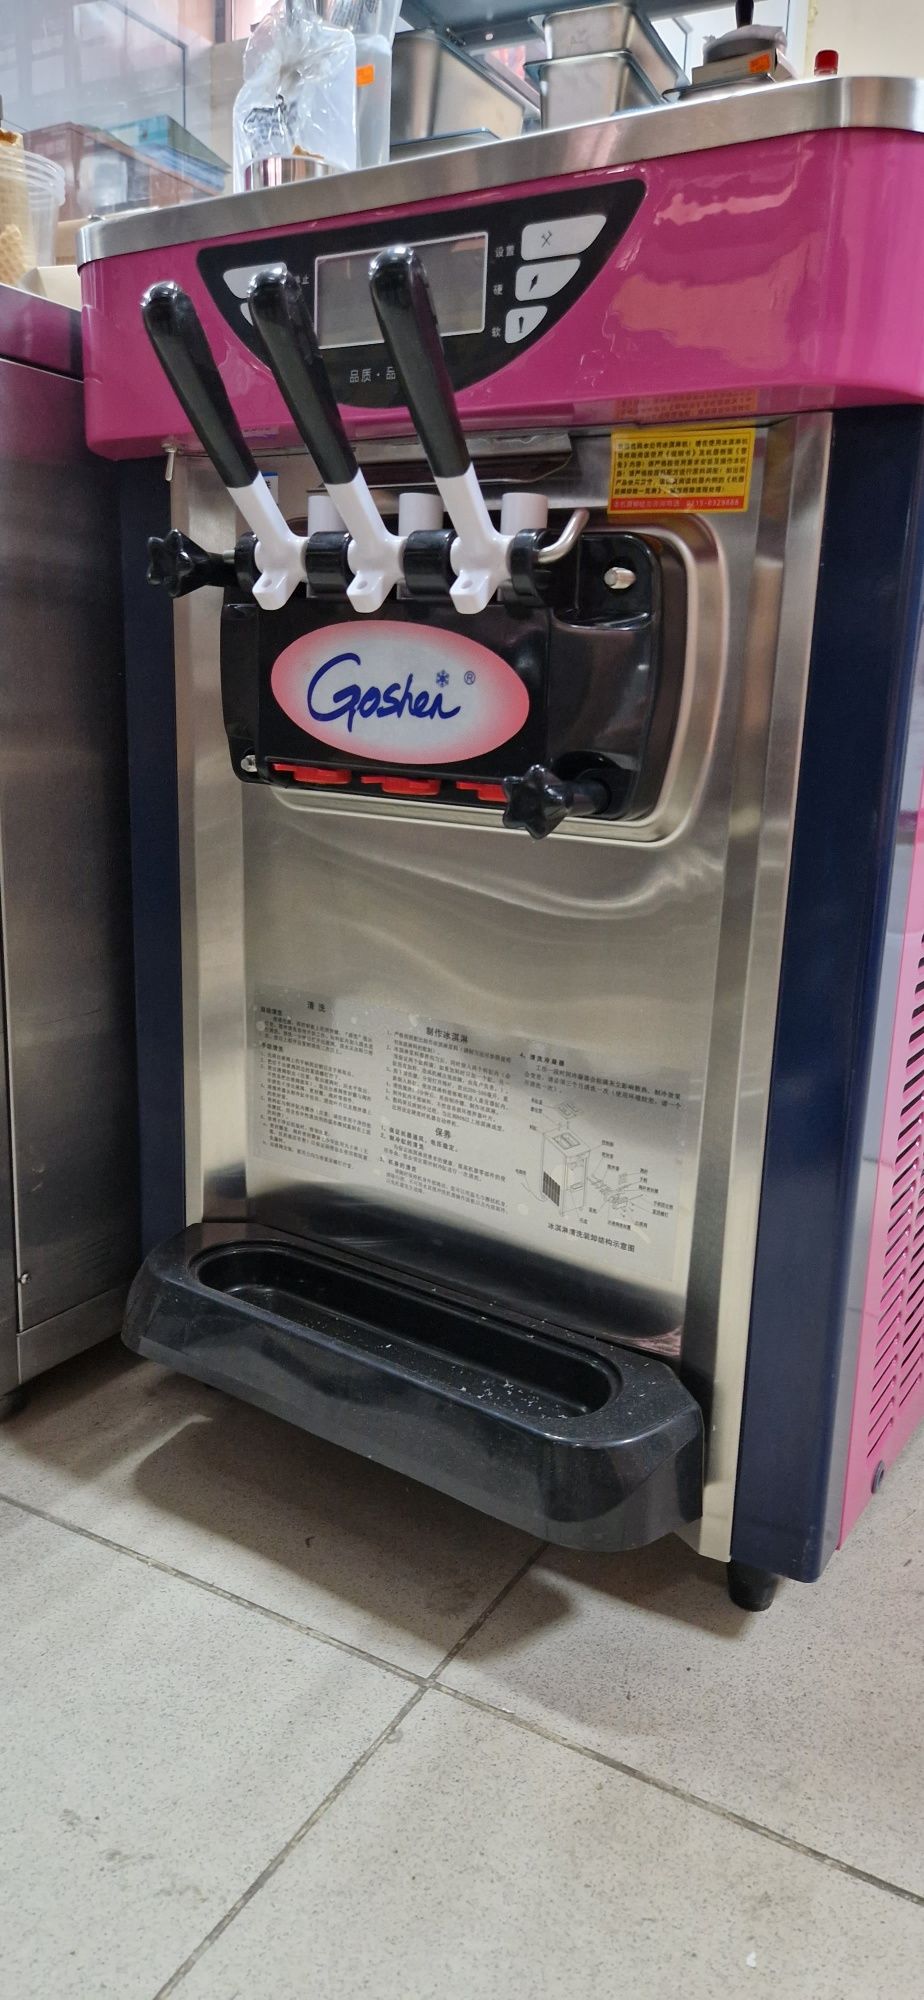 Аппарат для мороженого со склада.